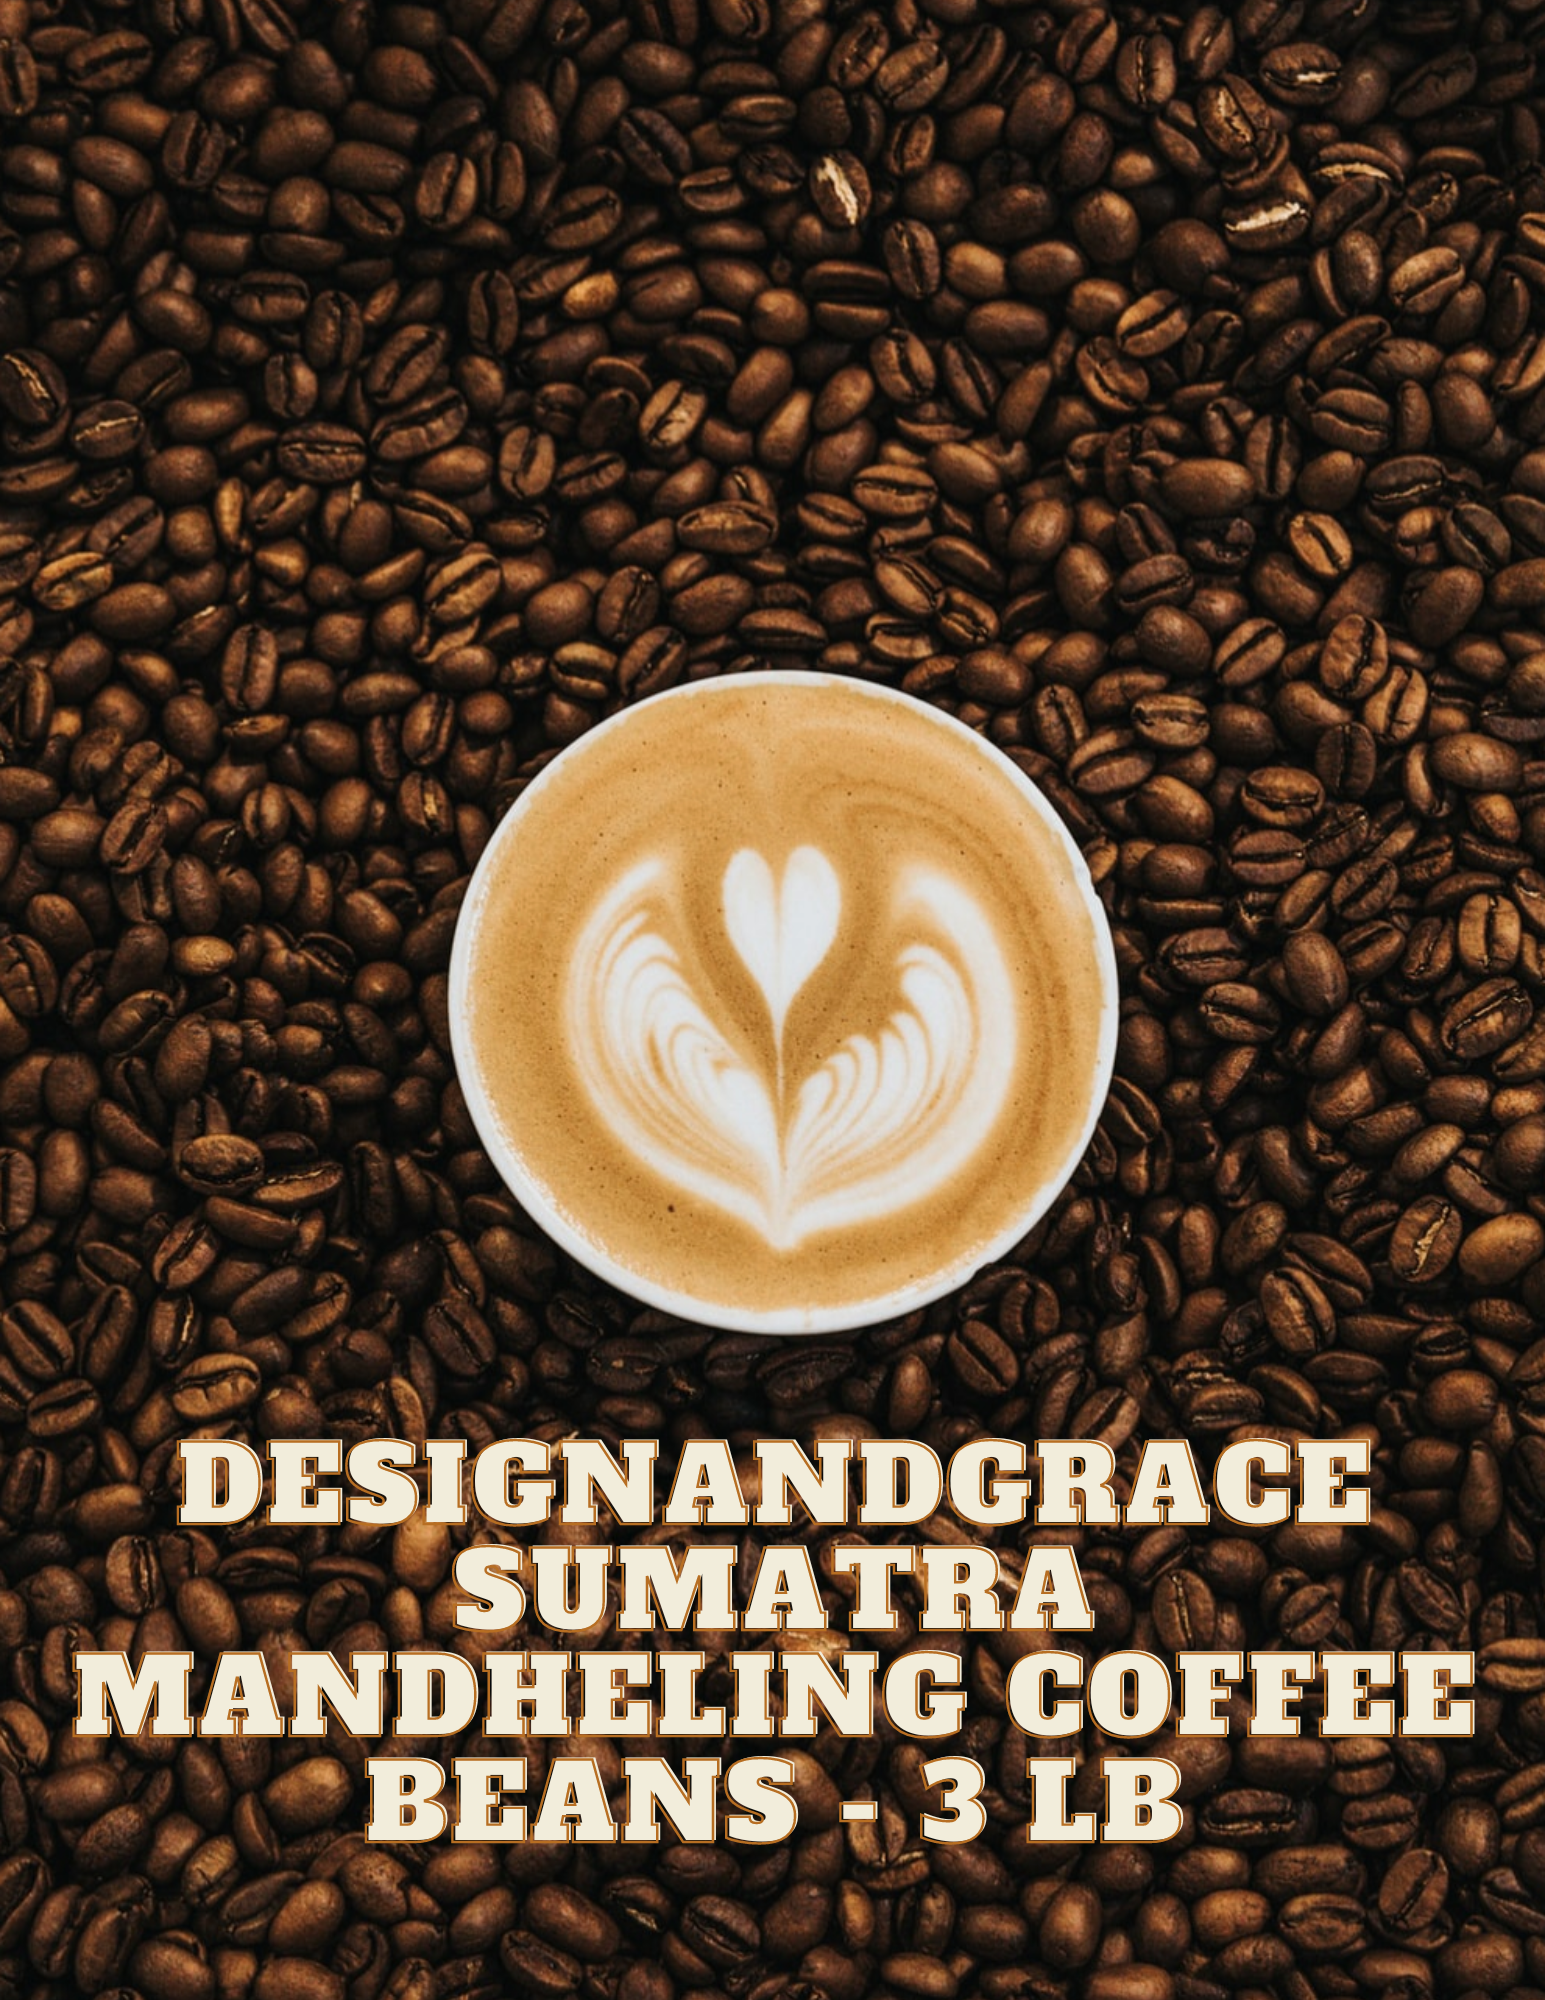 DesignandGrace Sumatra Mandheling Coffee Beans - 3 lb